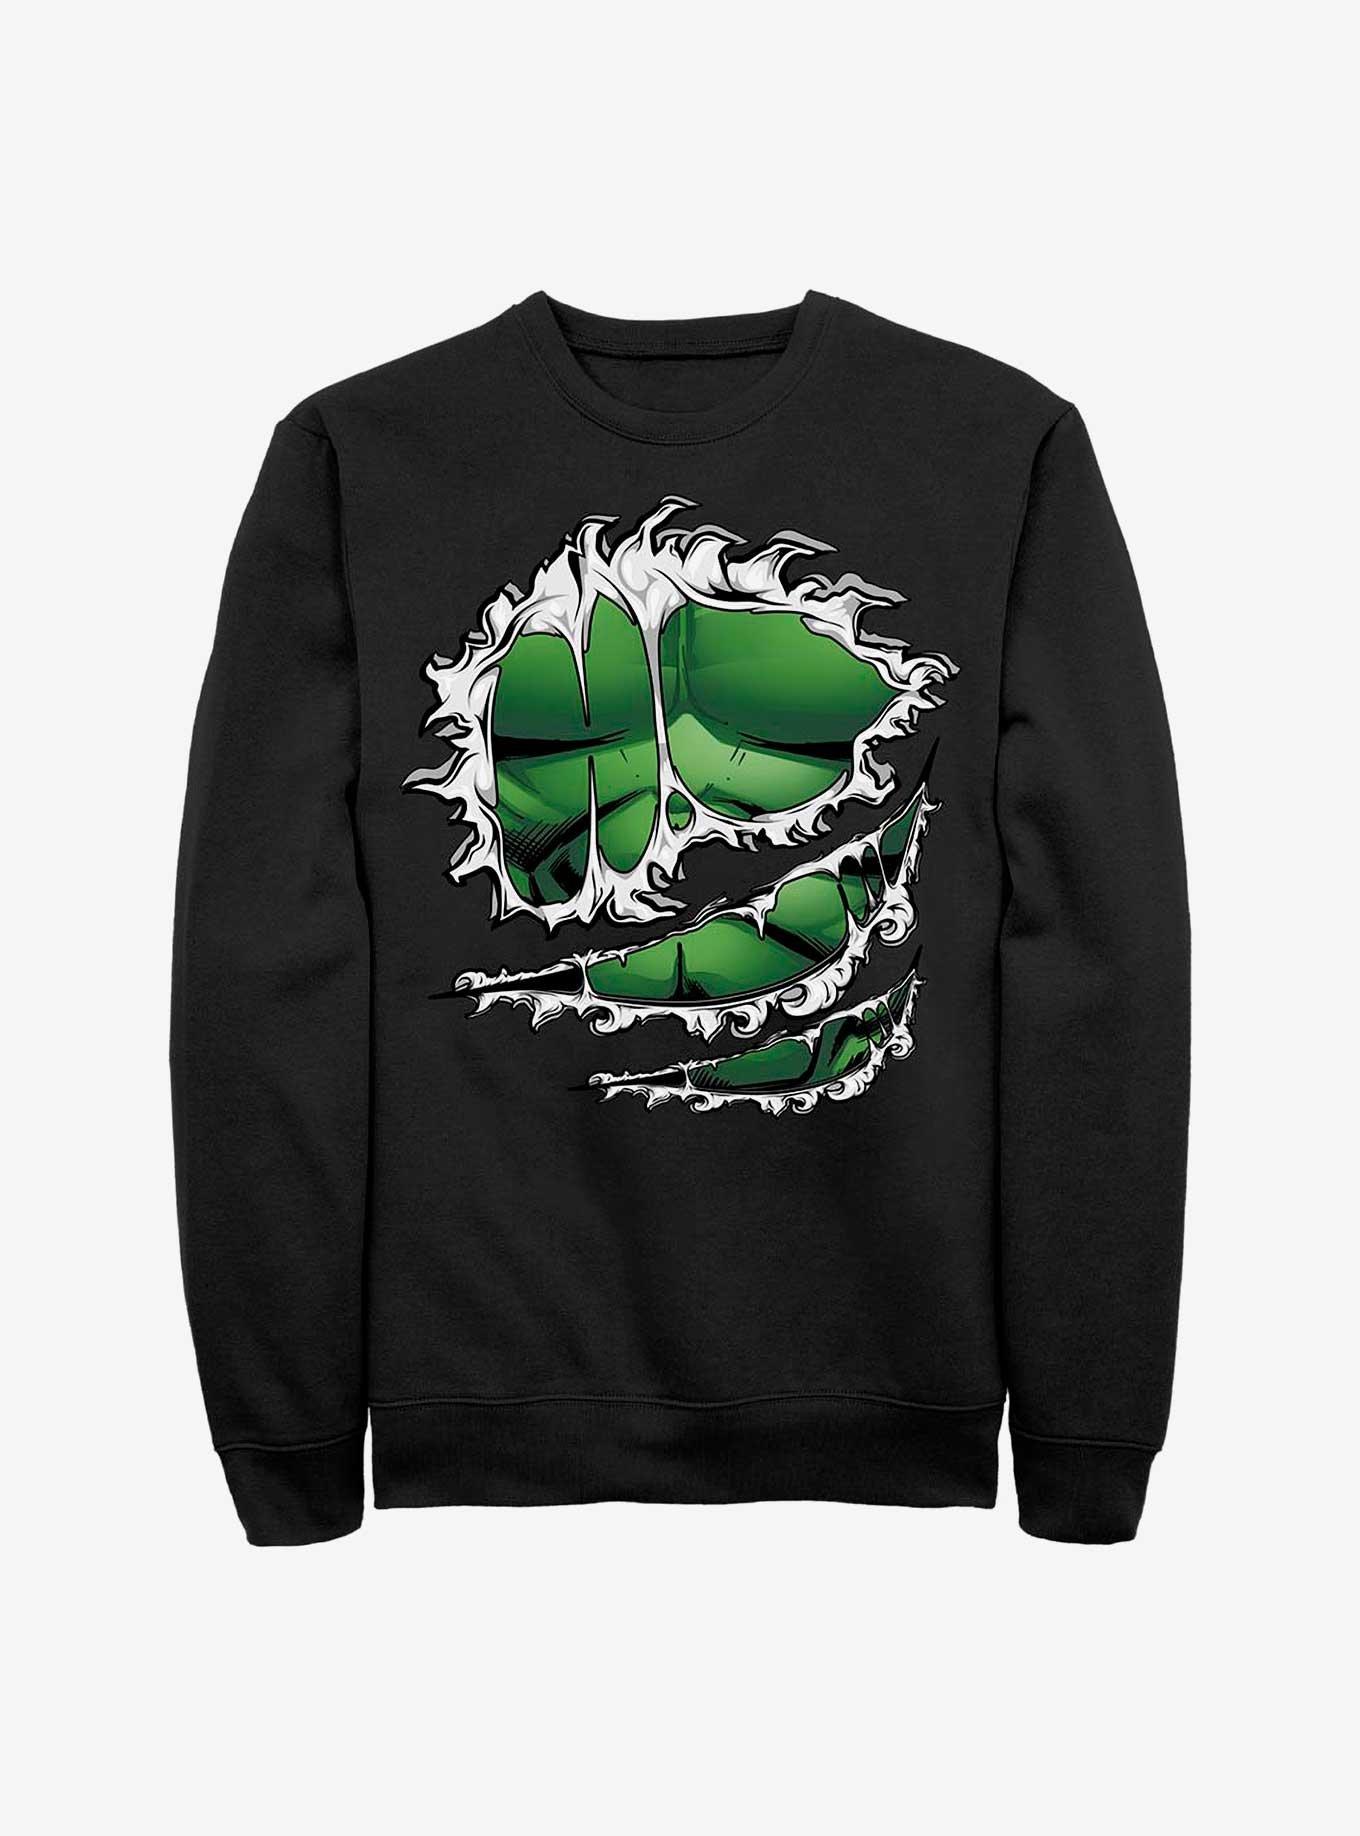 Marvel Hulk Costume Sweatshirt